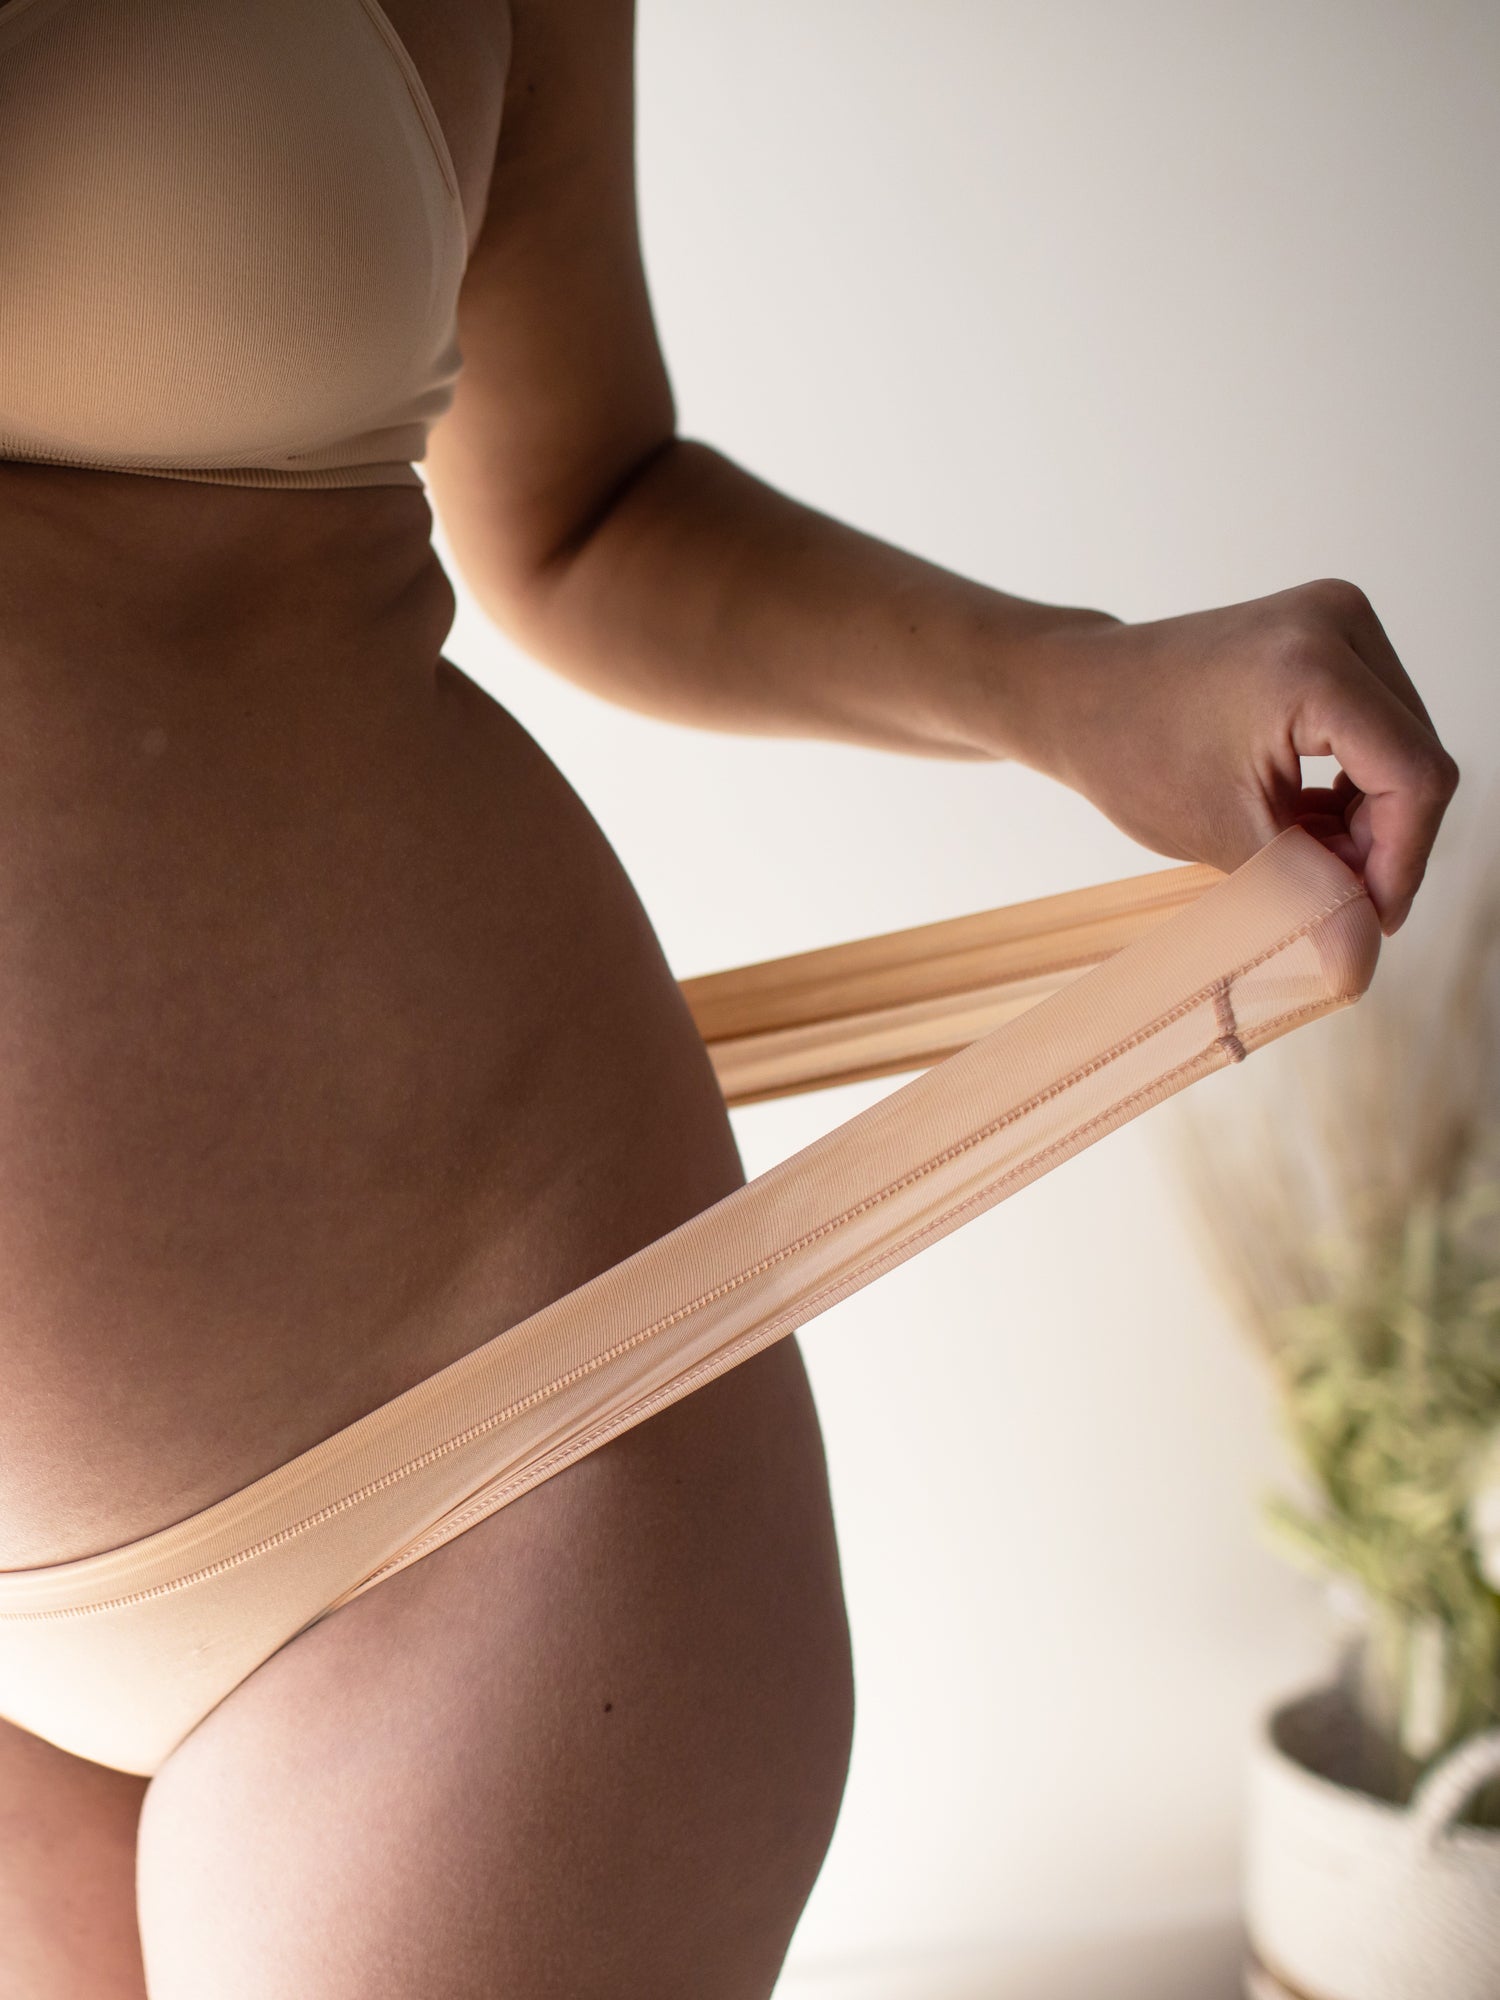 HUPOM Pregnancy Underwear For Women Womens Underwear Thong